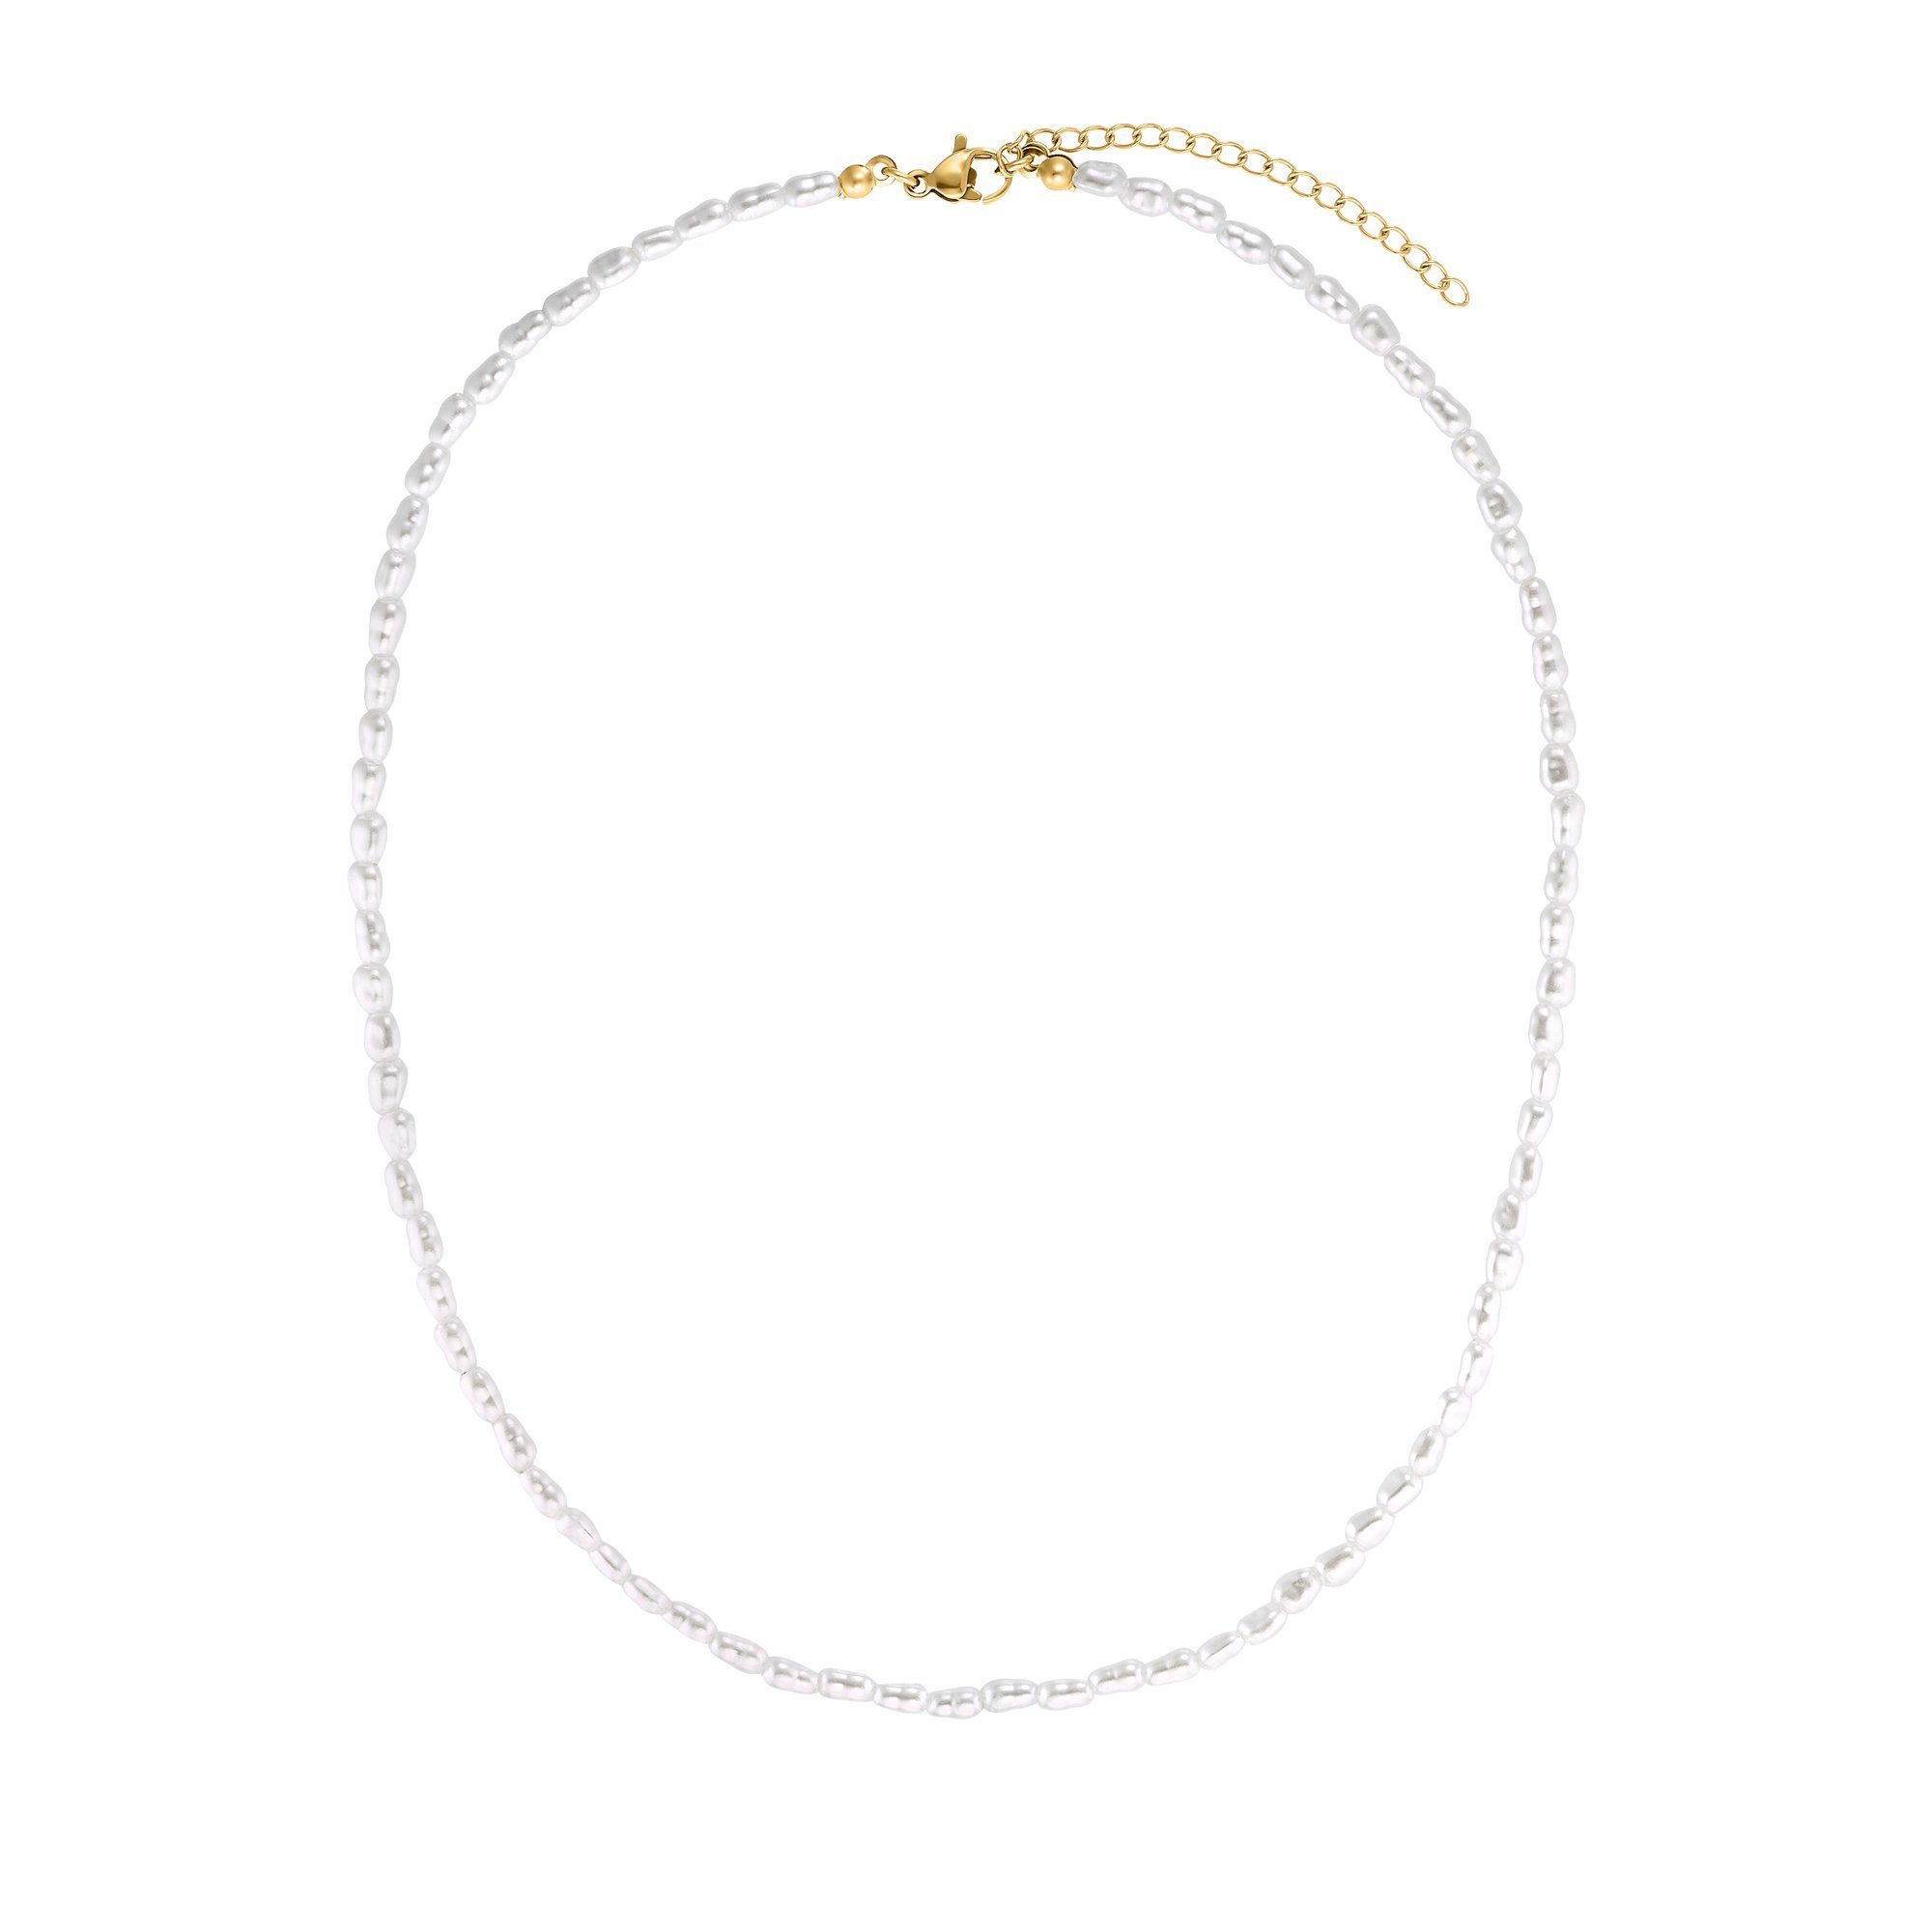 Heideman Collier Aaron goldfarben (inkl. Geschenkverpackung), Halskette mit Perlen für Männer